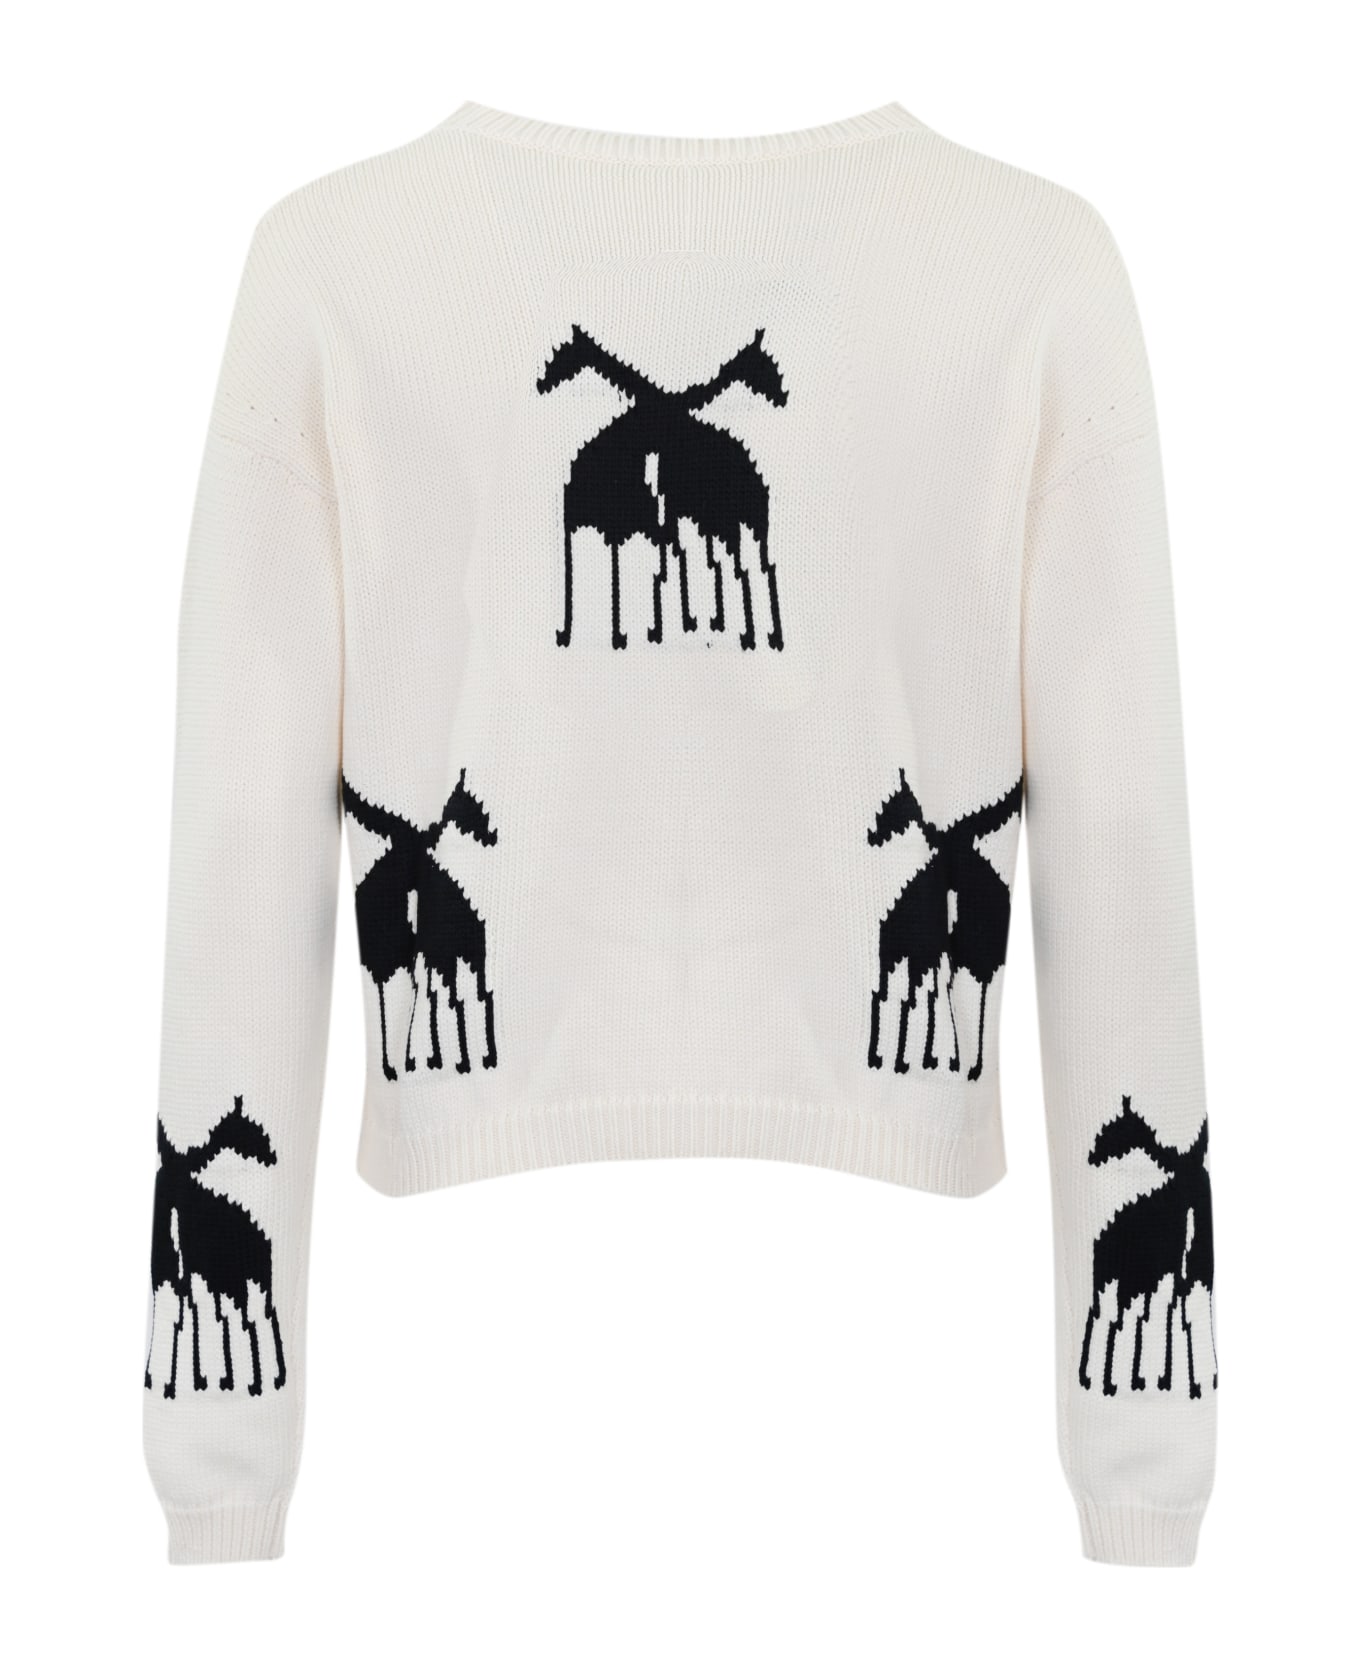 Max Mara Studio 'unno' Sweater In Jacquard Cotton Blend - Dis. giraffa